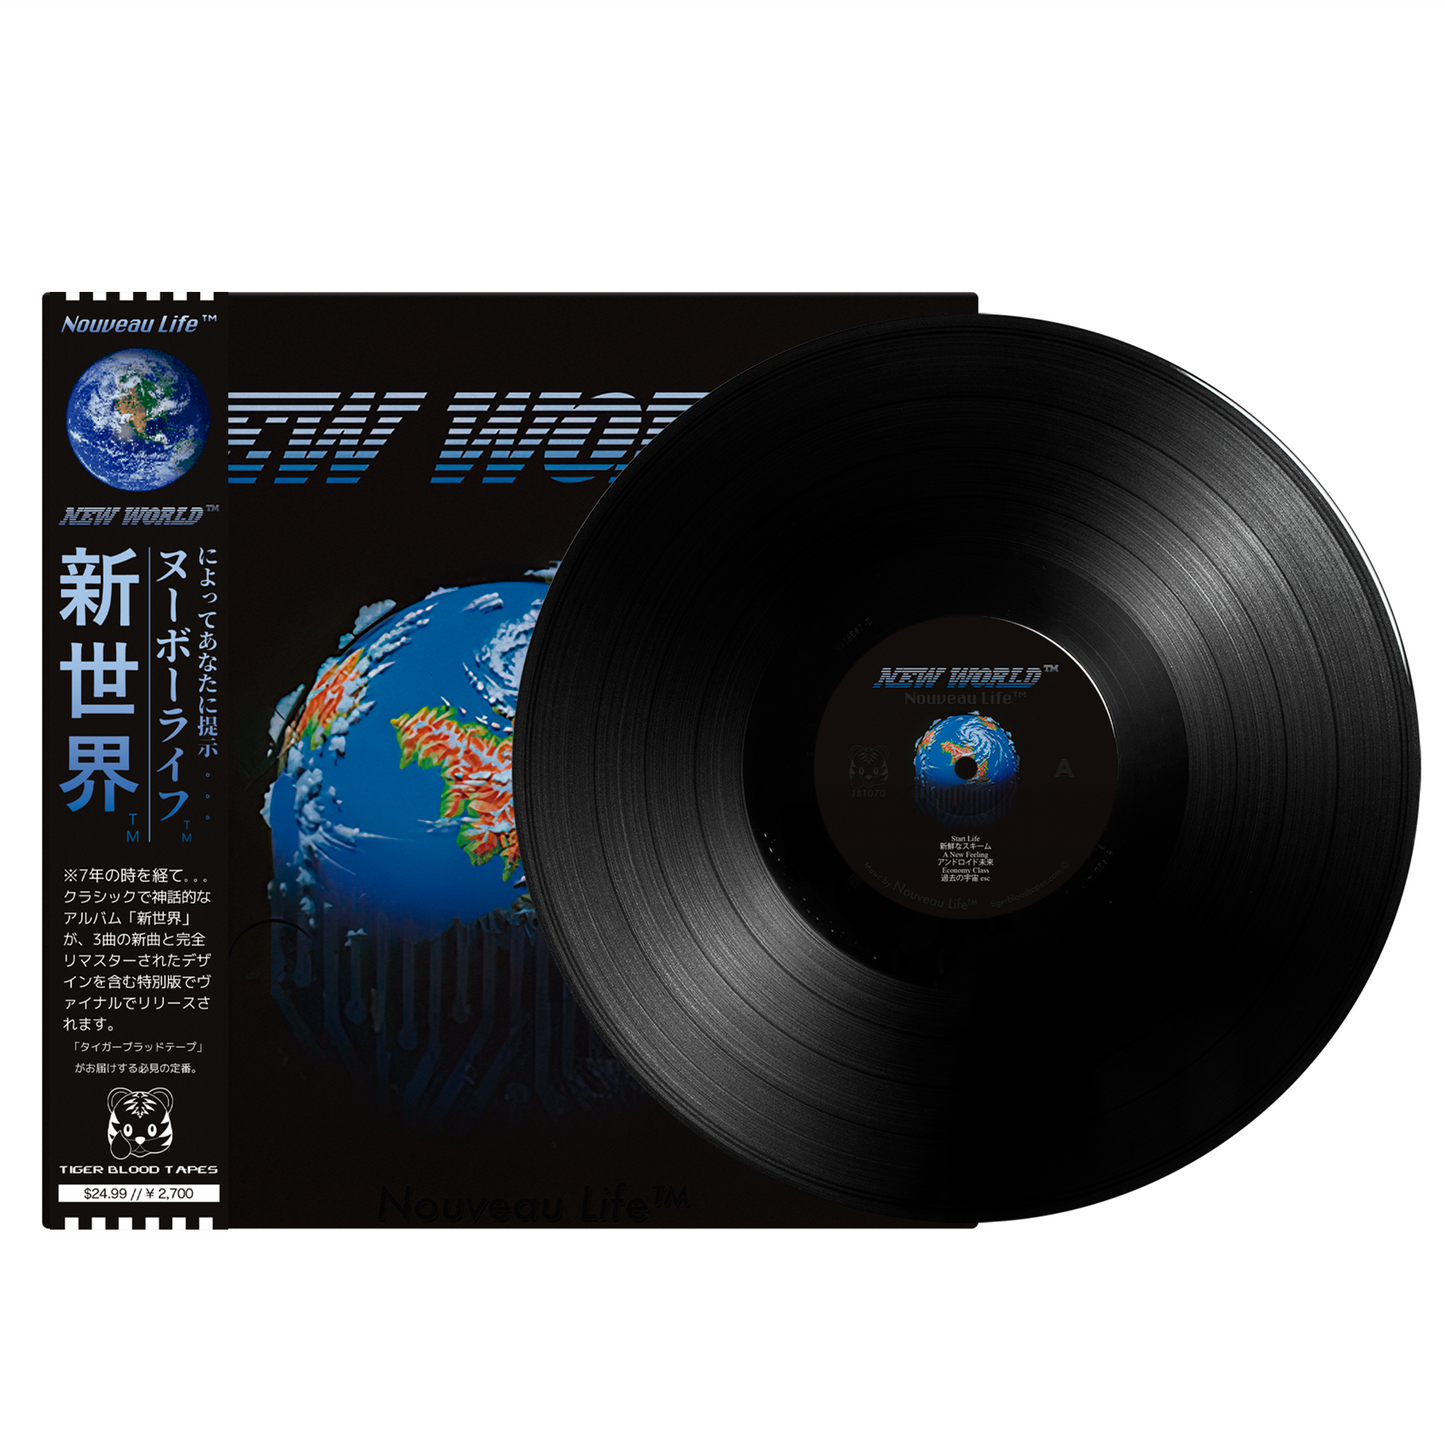 Nouveau Life™ - "New World™" Limited Edition Vinyl 12" LP